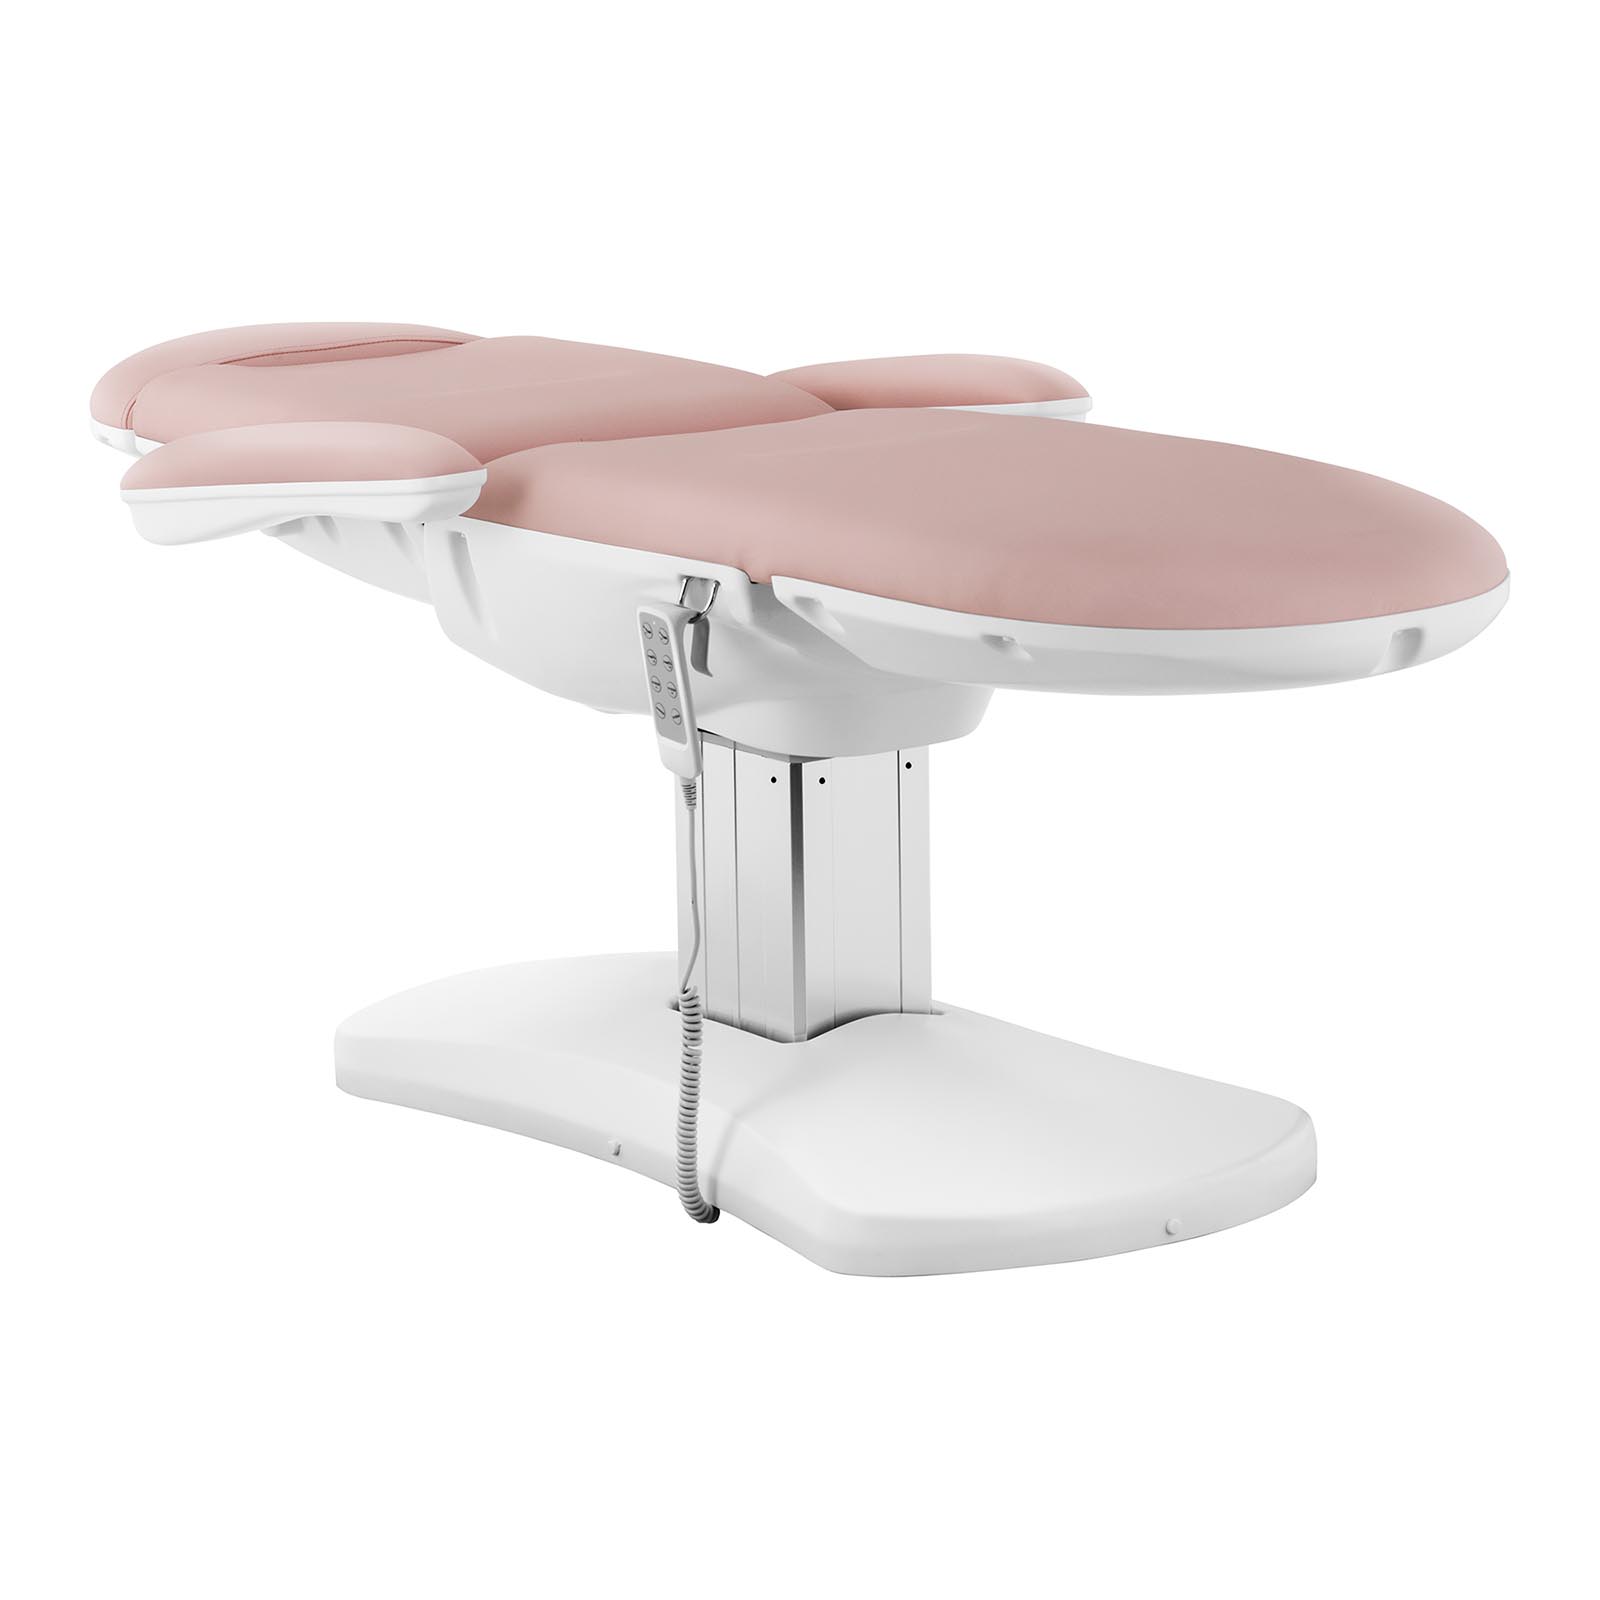 Fotel kosmetyczny i taboret kosmetyczny - różowy, biały